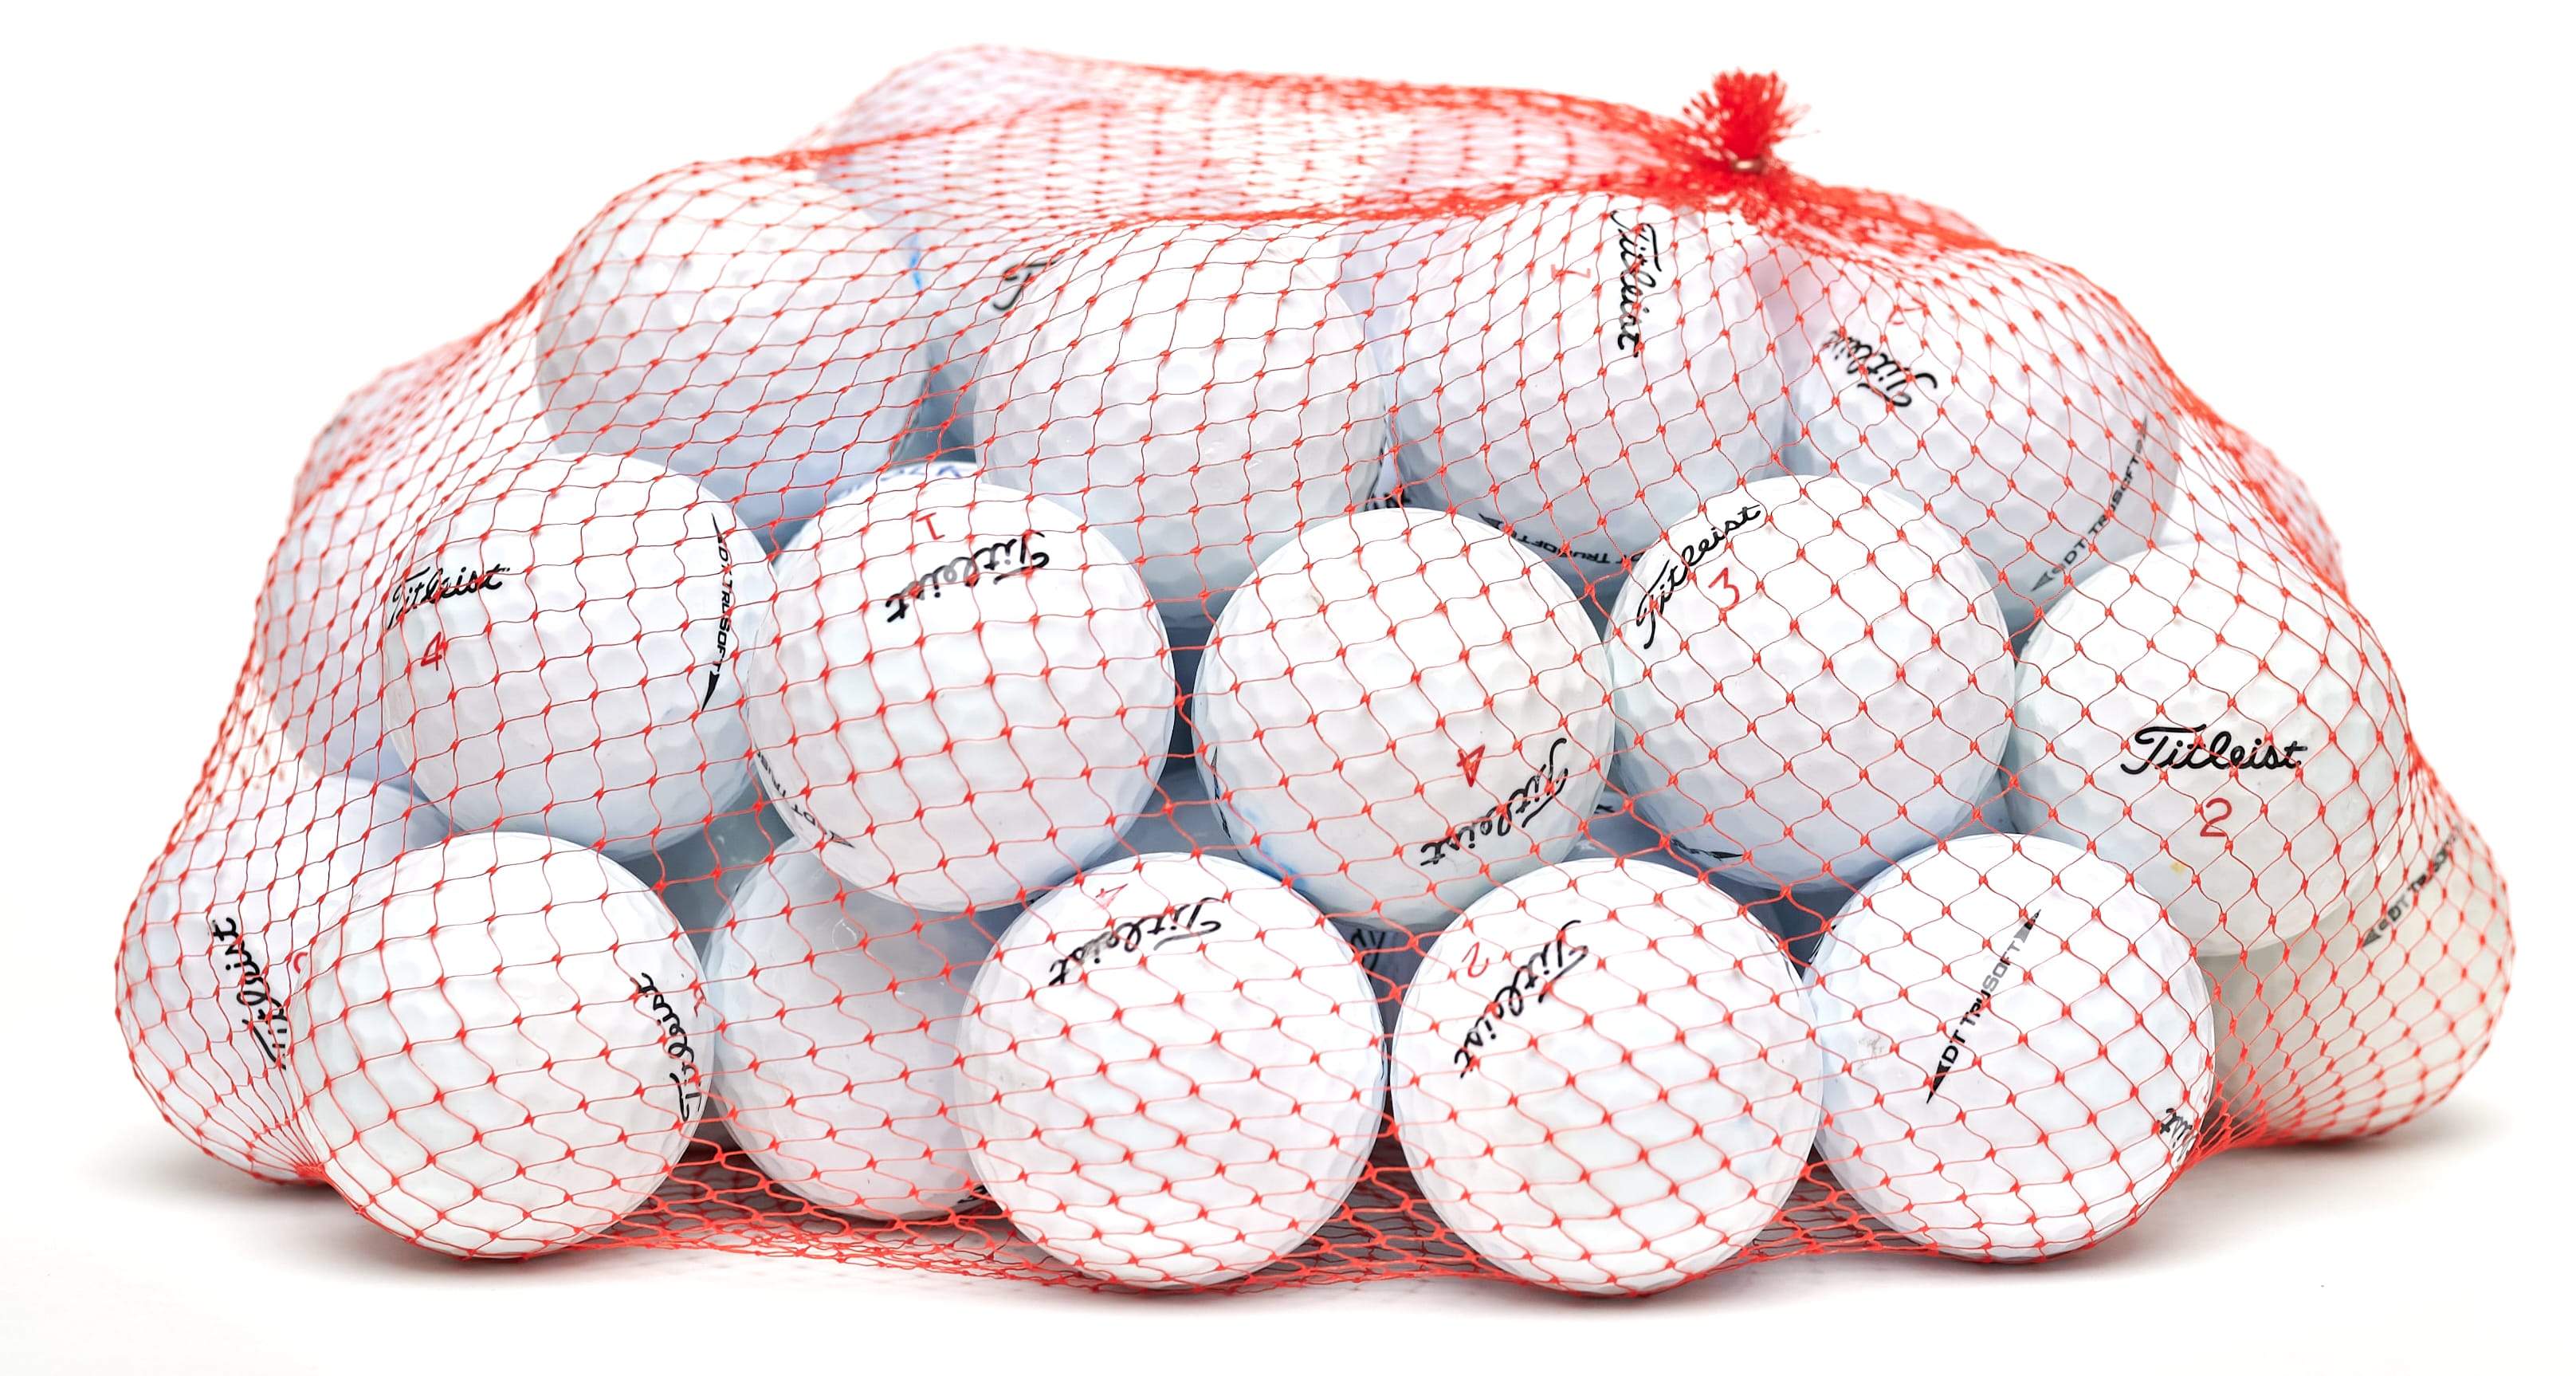 50 Titleist TruSoft Lakeballs, white